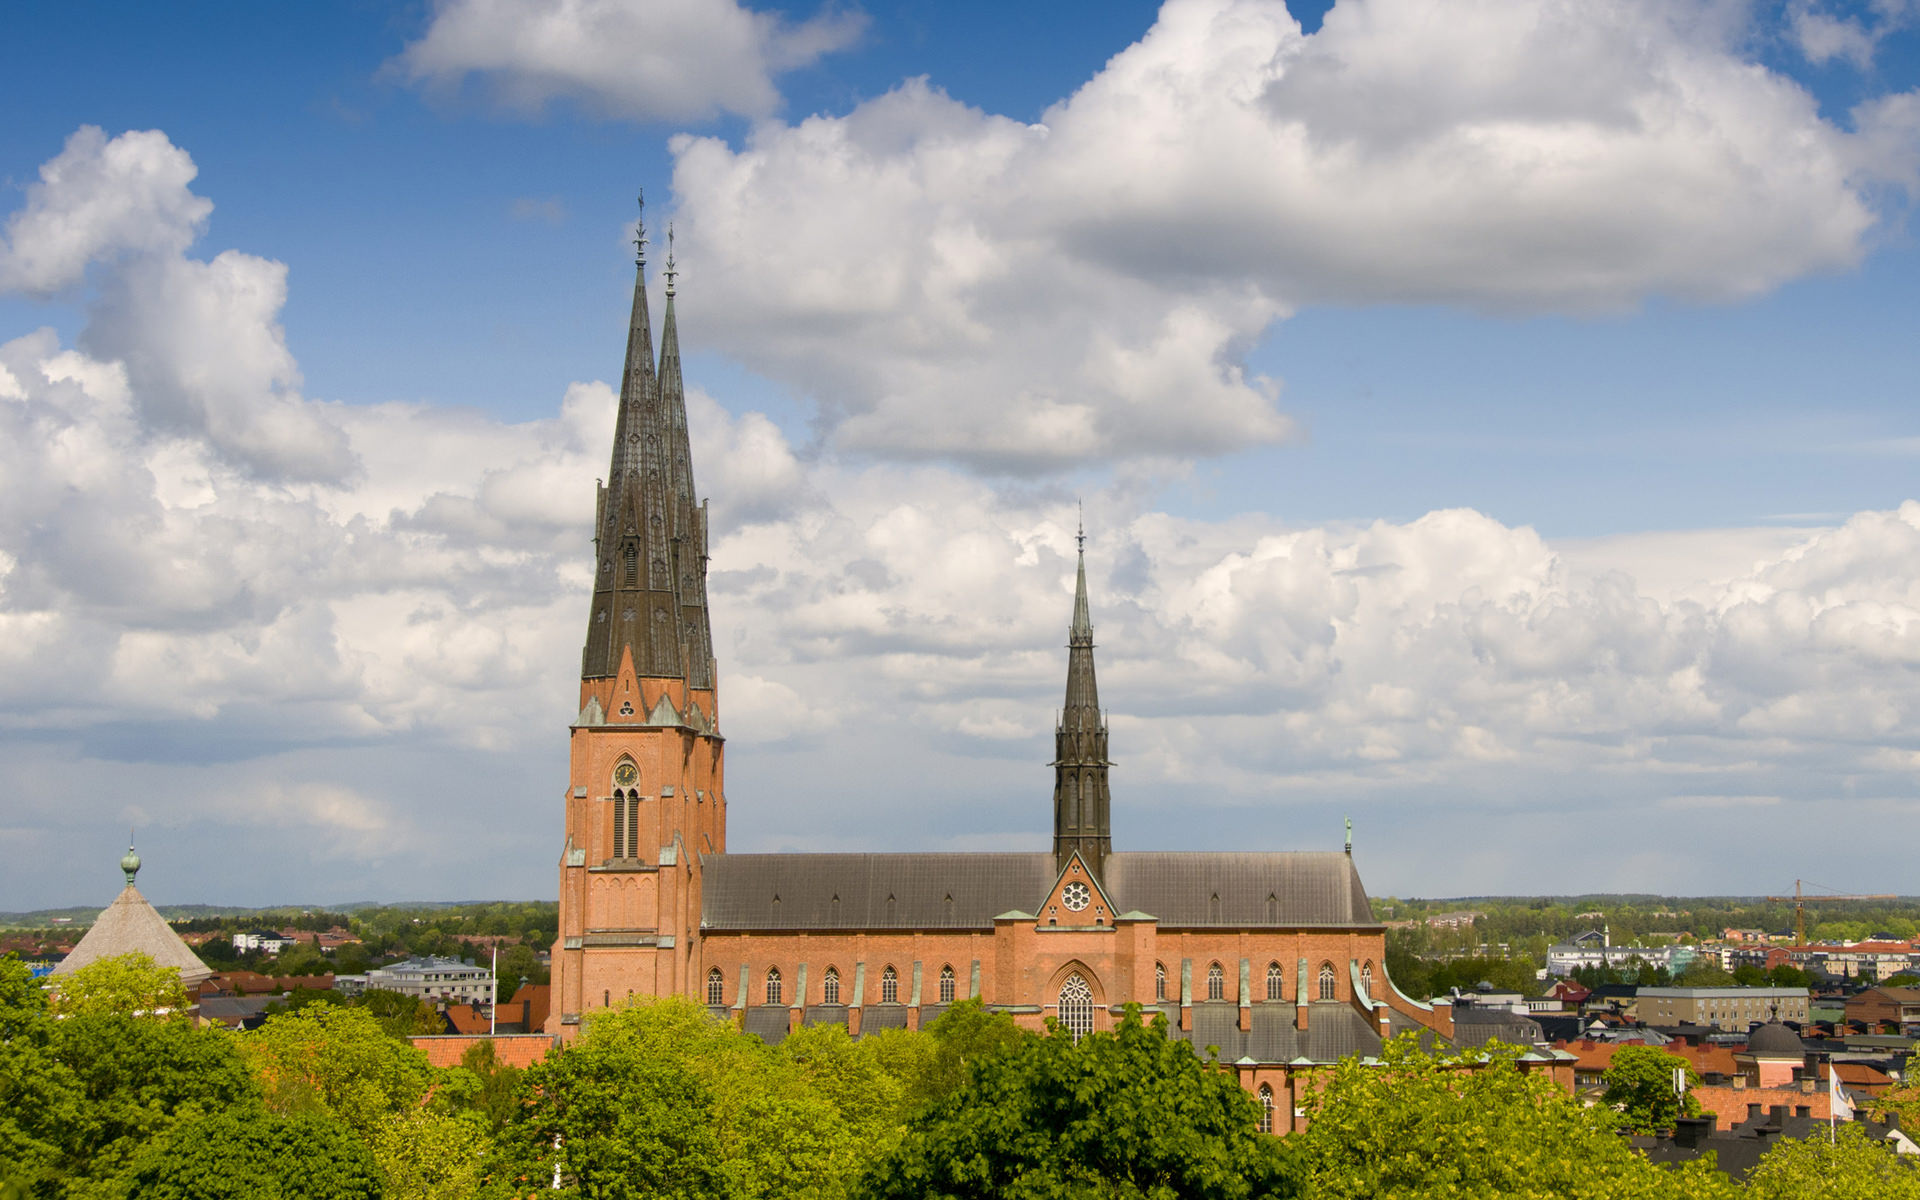 Dom zu Uppsala | elchburger.de